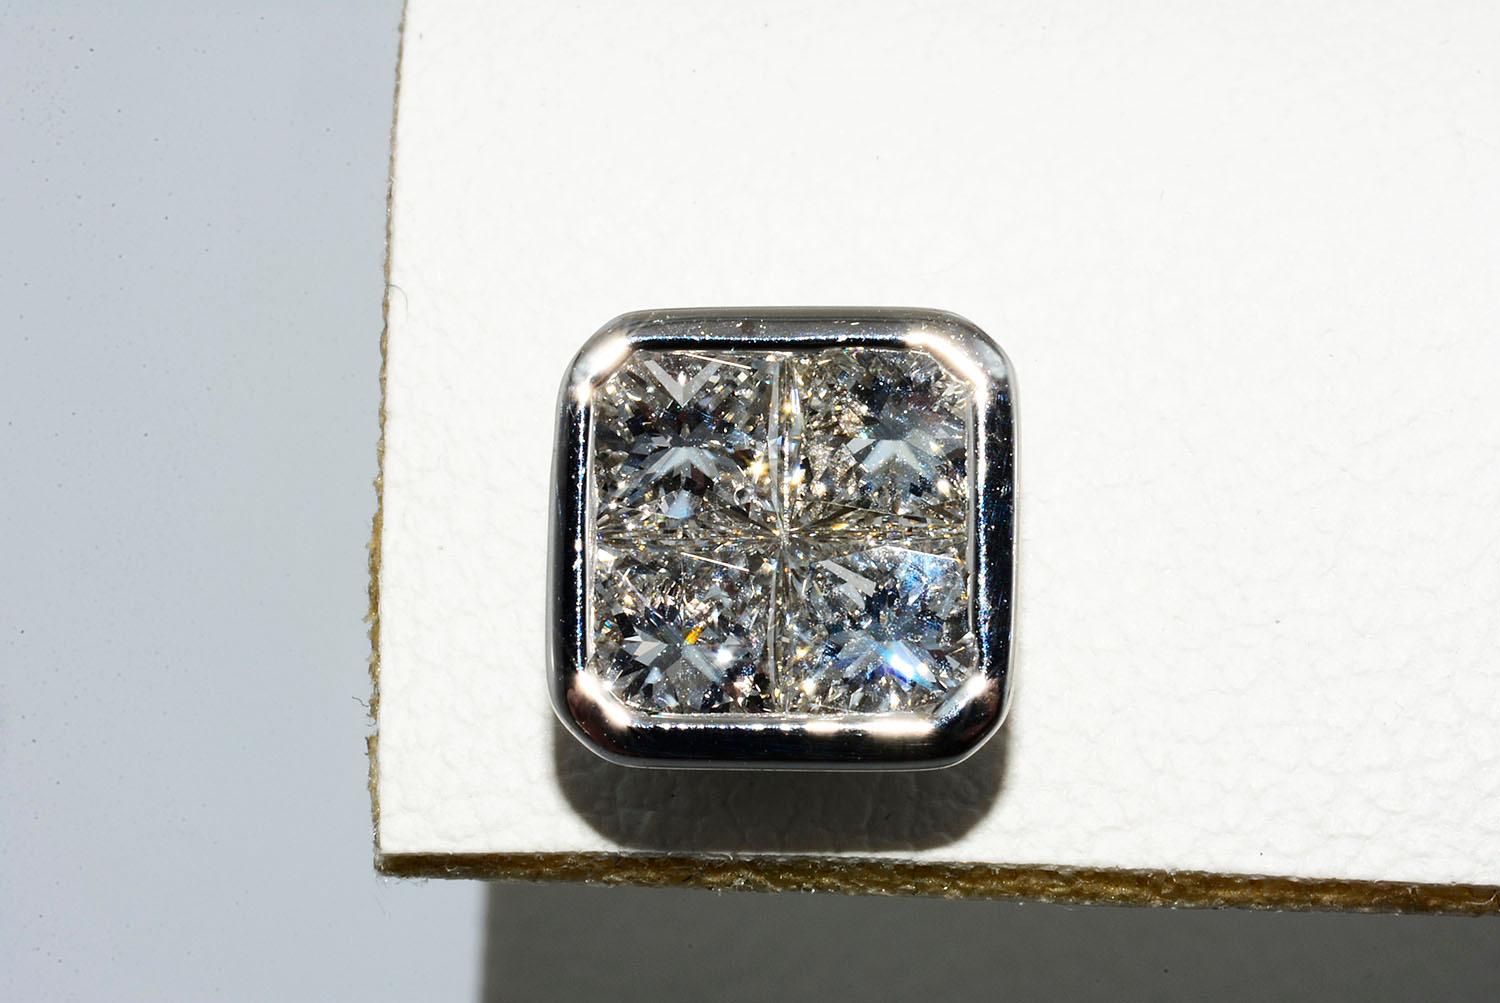 Invisible Set Princes Cut Diamond Studs 18K White Gold

Princess Cut Diamonds 2.48ct  F VS1
18K White Gold
Push Back